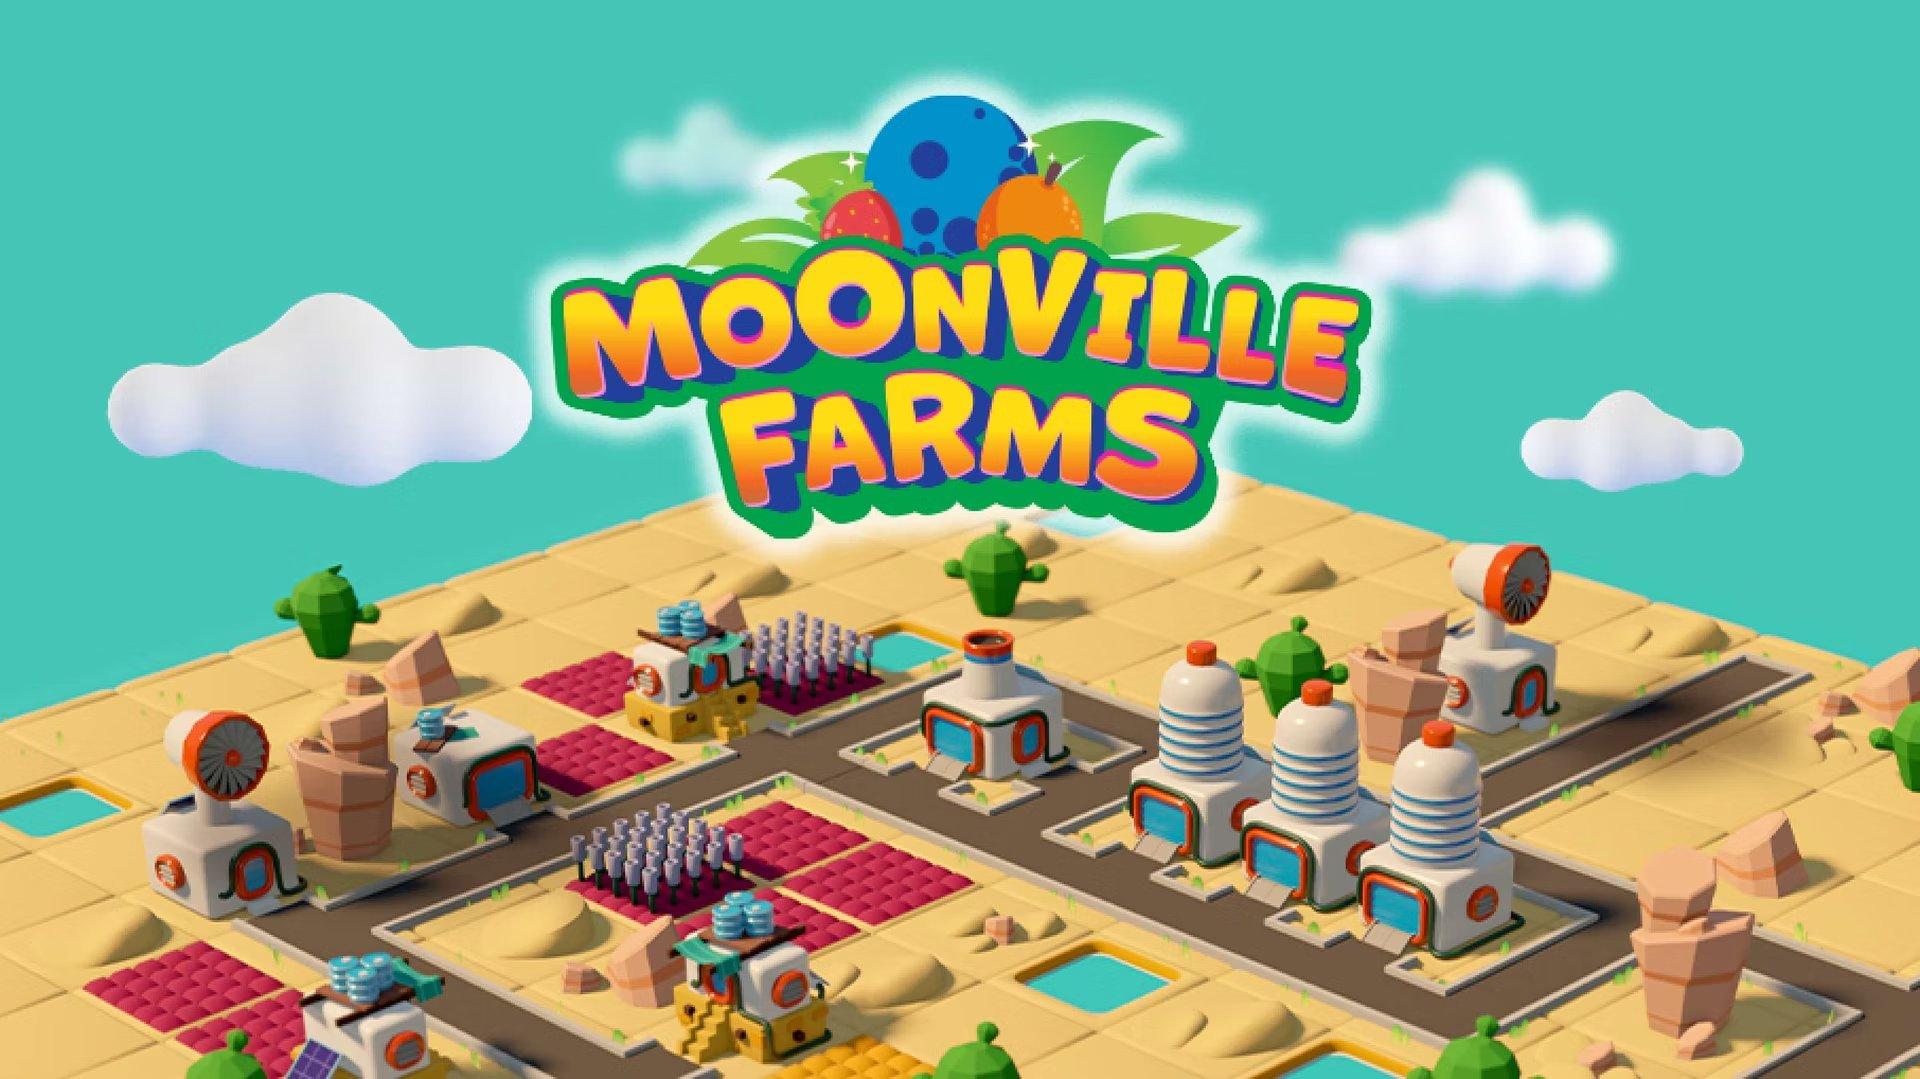 Oyun İncelemesi: Moonville